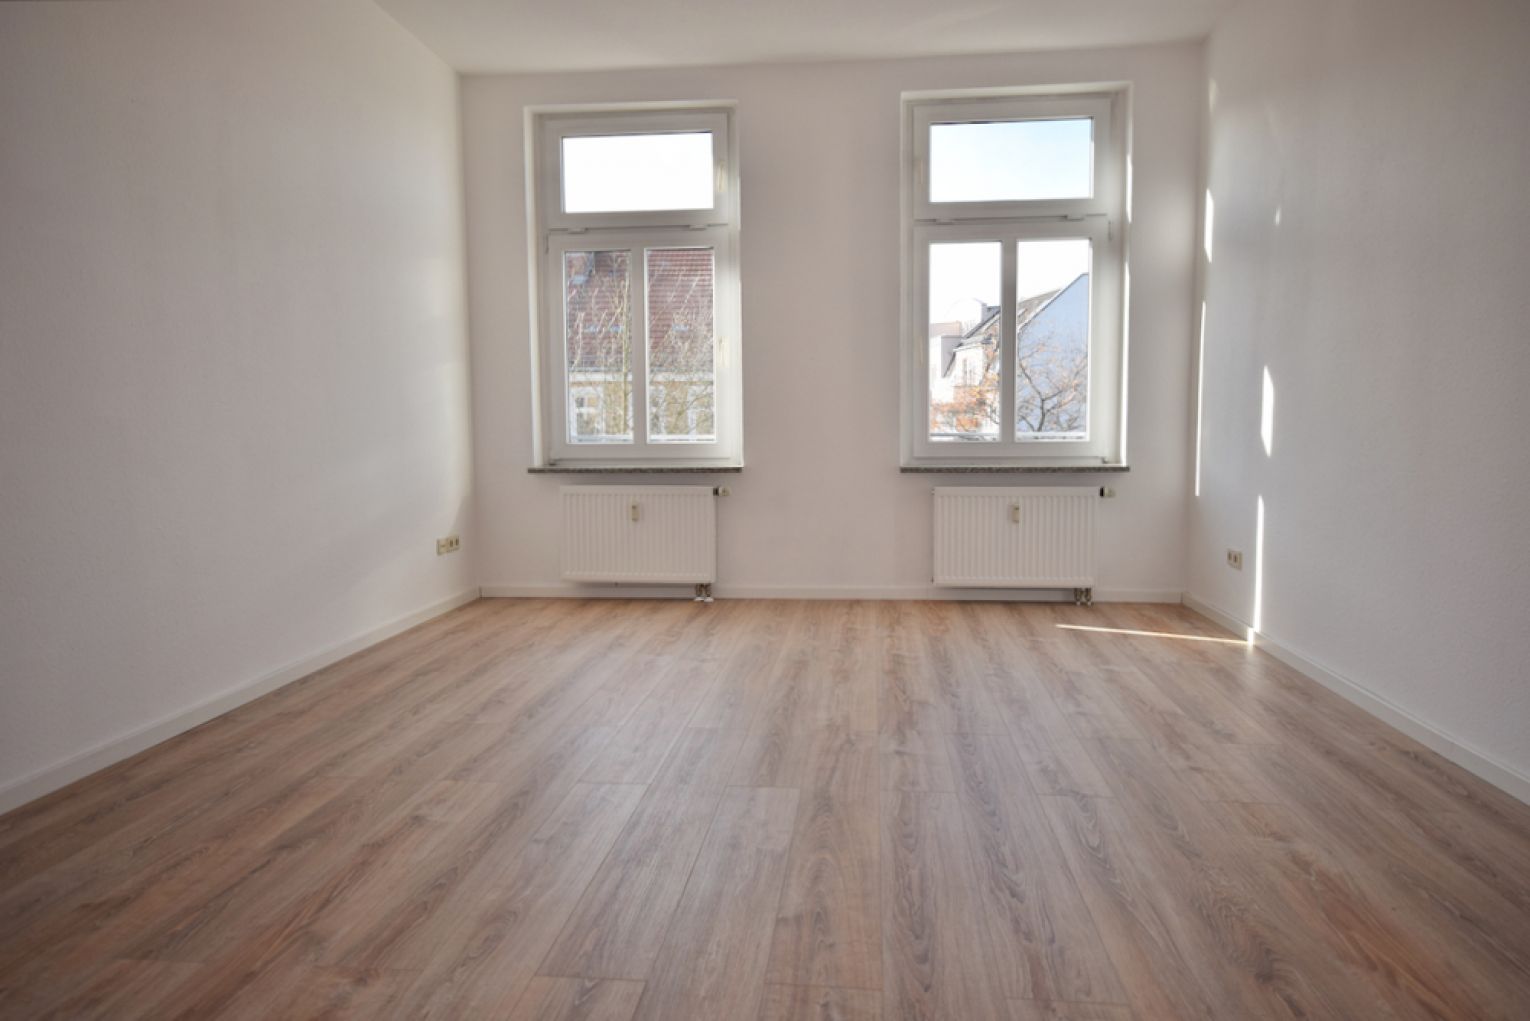 Kaßberg • Balkon • 3 Zimmer • neues Laminat • Bad mit Wanne • Hausgarten • jetzt Mieten